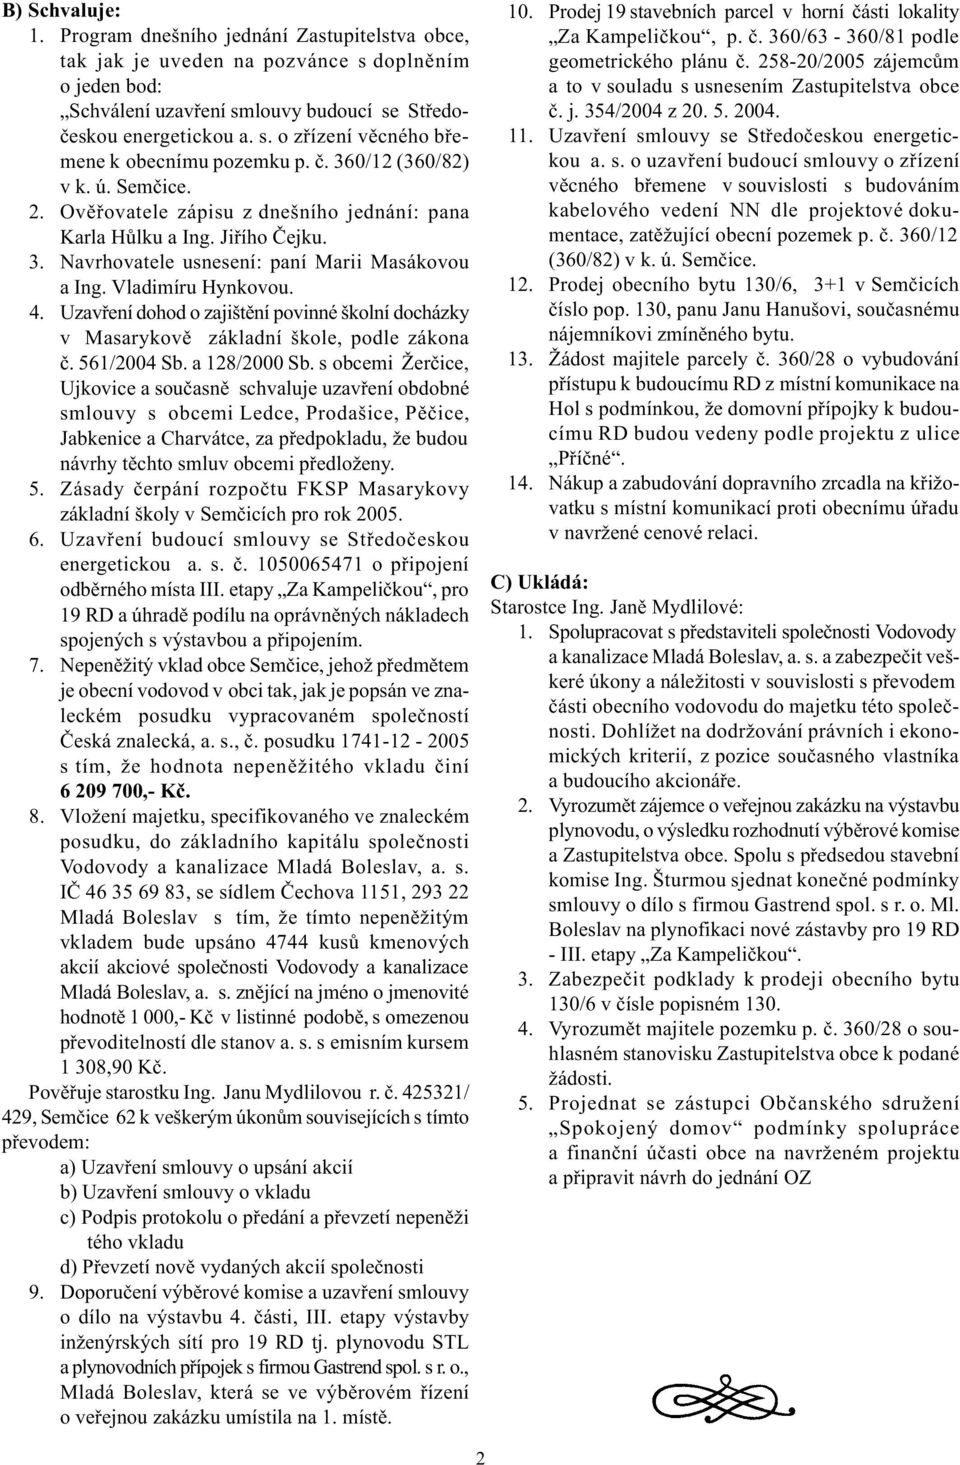 Uzavøeí dohod o zajištìí povié školí docházky v Masarykovì základí škole, podle zákoa è. 561/2004 Sb. a 128/2000 Sb.